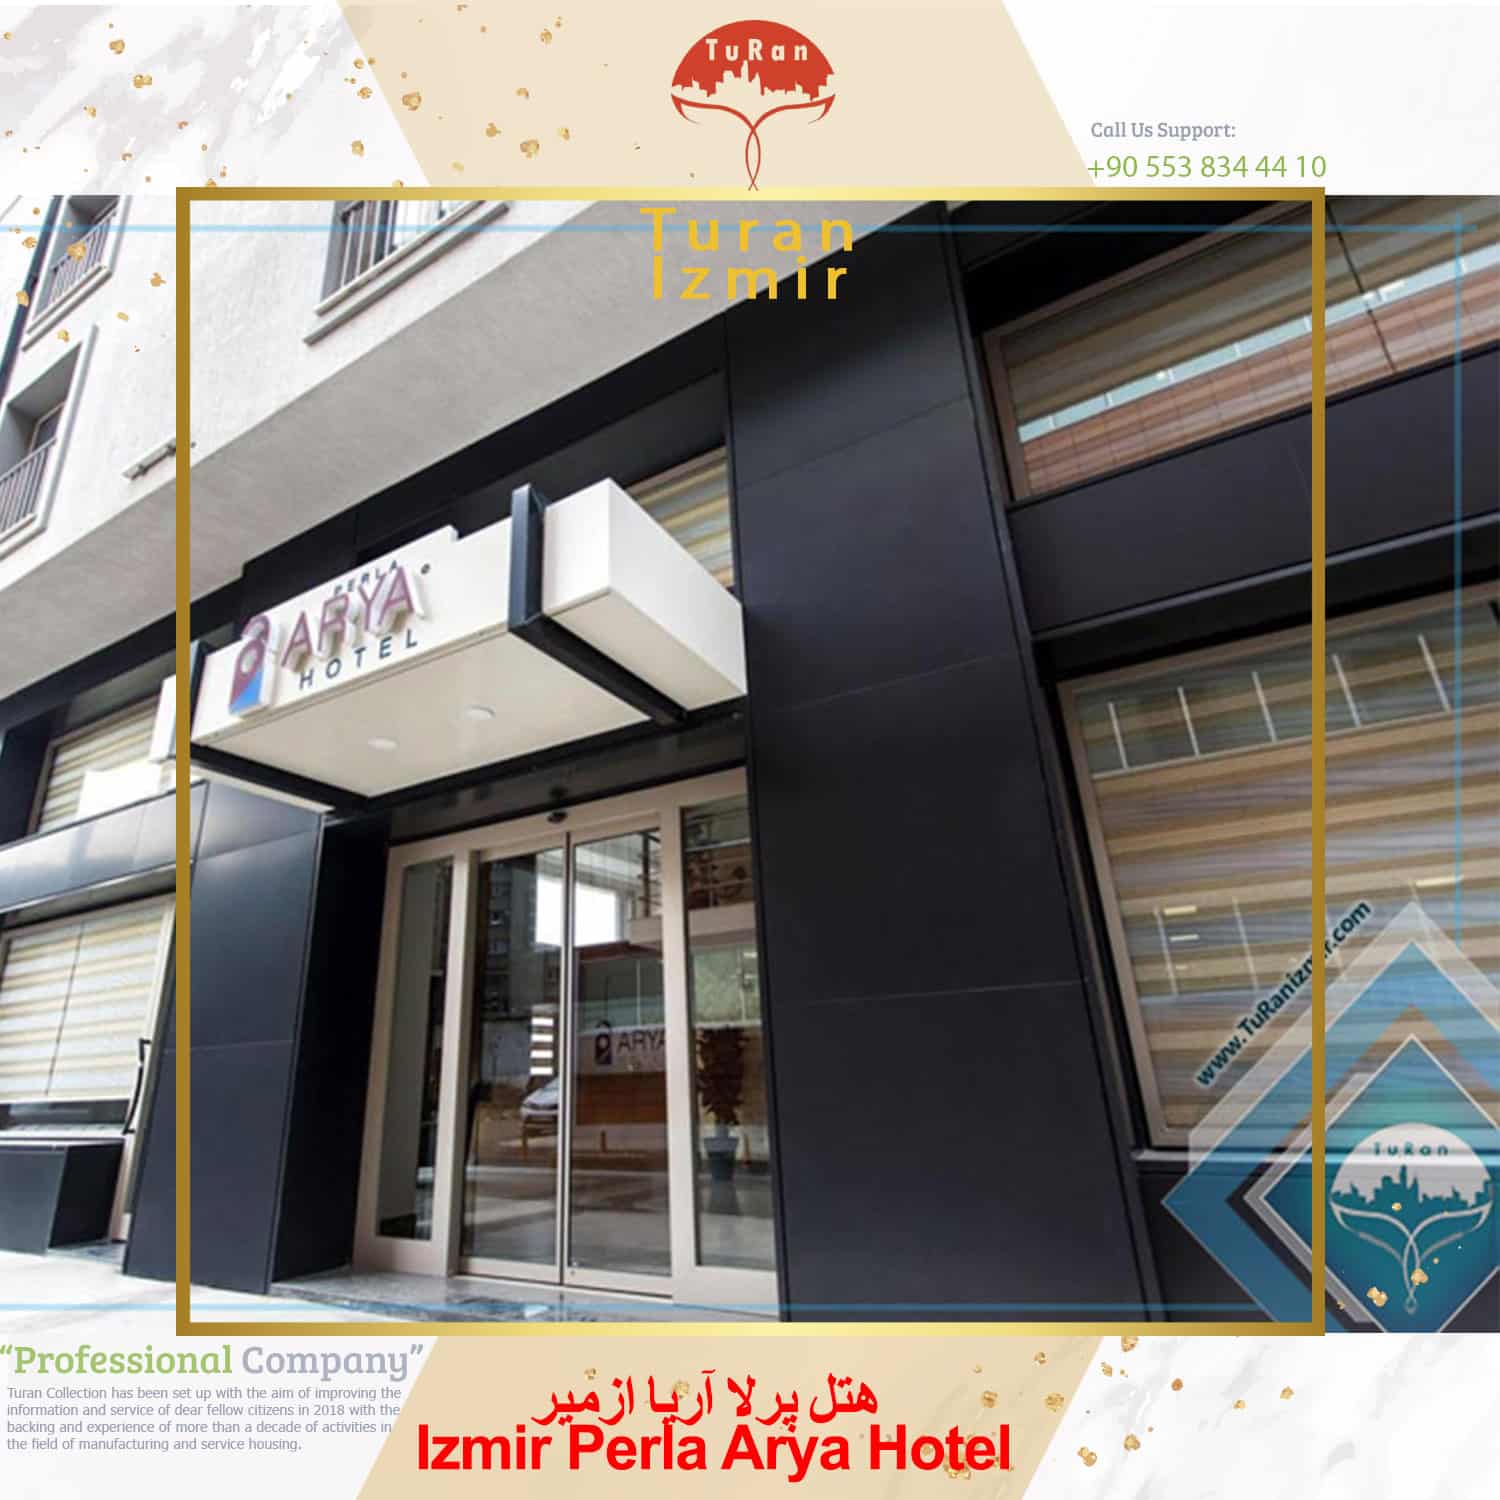 هتل پرلا آریا ازمیر Izmir Perla Arya Hotel | توران ازمیر | Izmir Perla Arya Hotel ترکیه | هتل های ازمیر ترکیه